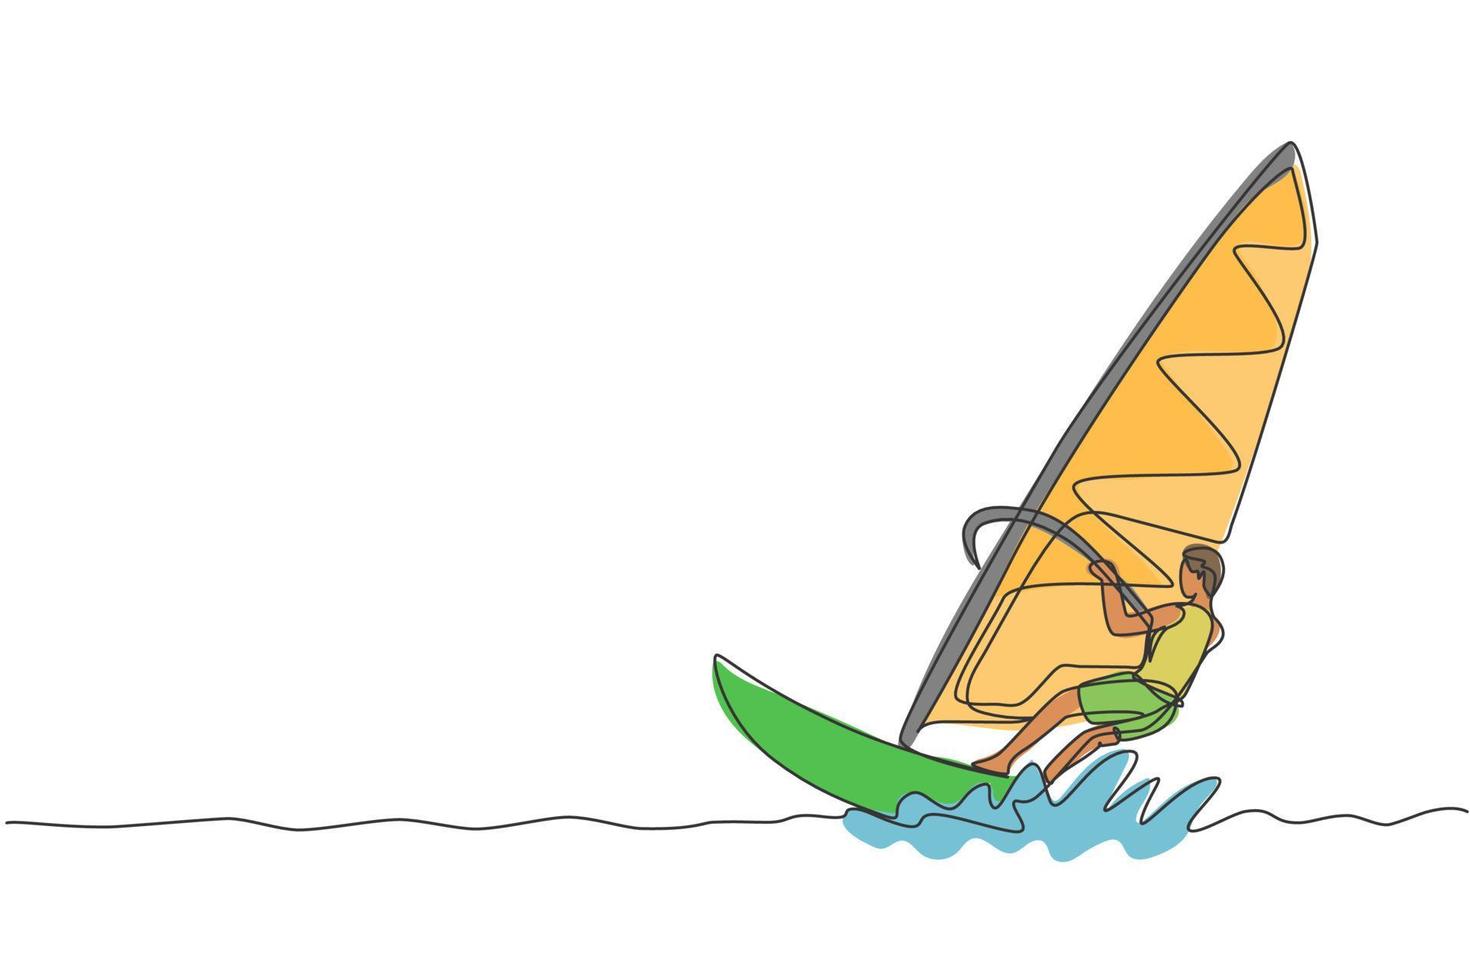 un solo dibujo de línea joven deportista jugar windsurf en la ilustración de vector gráfico de playa de mar. estilo de vida saludable y concepto de deporte extremo. vacaciones de verano. diseño moderno de dibujo de línea continua